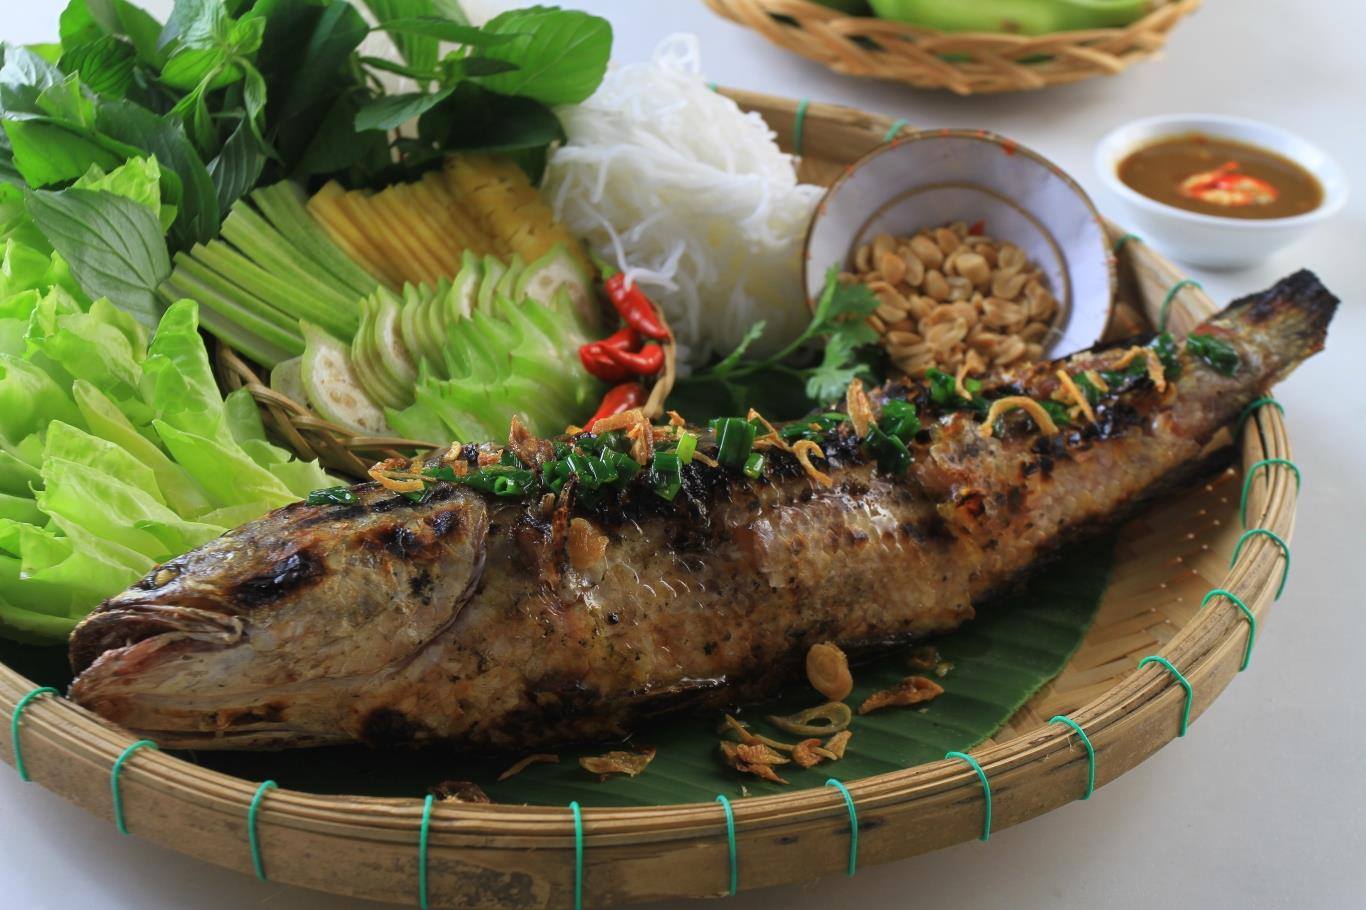 Cá lóc nướng trui Tiền Giang, món ăn bình dị của vùng sông nước 6